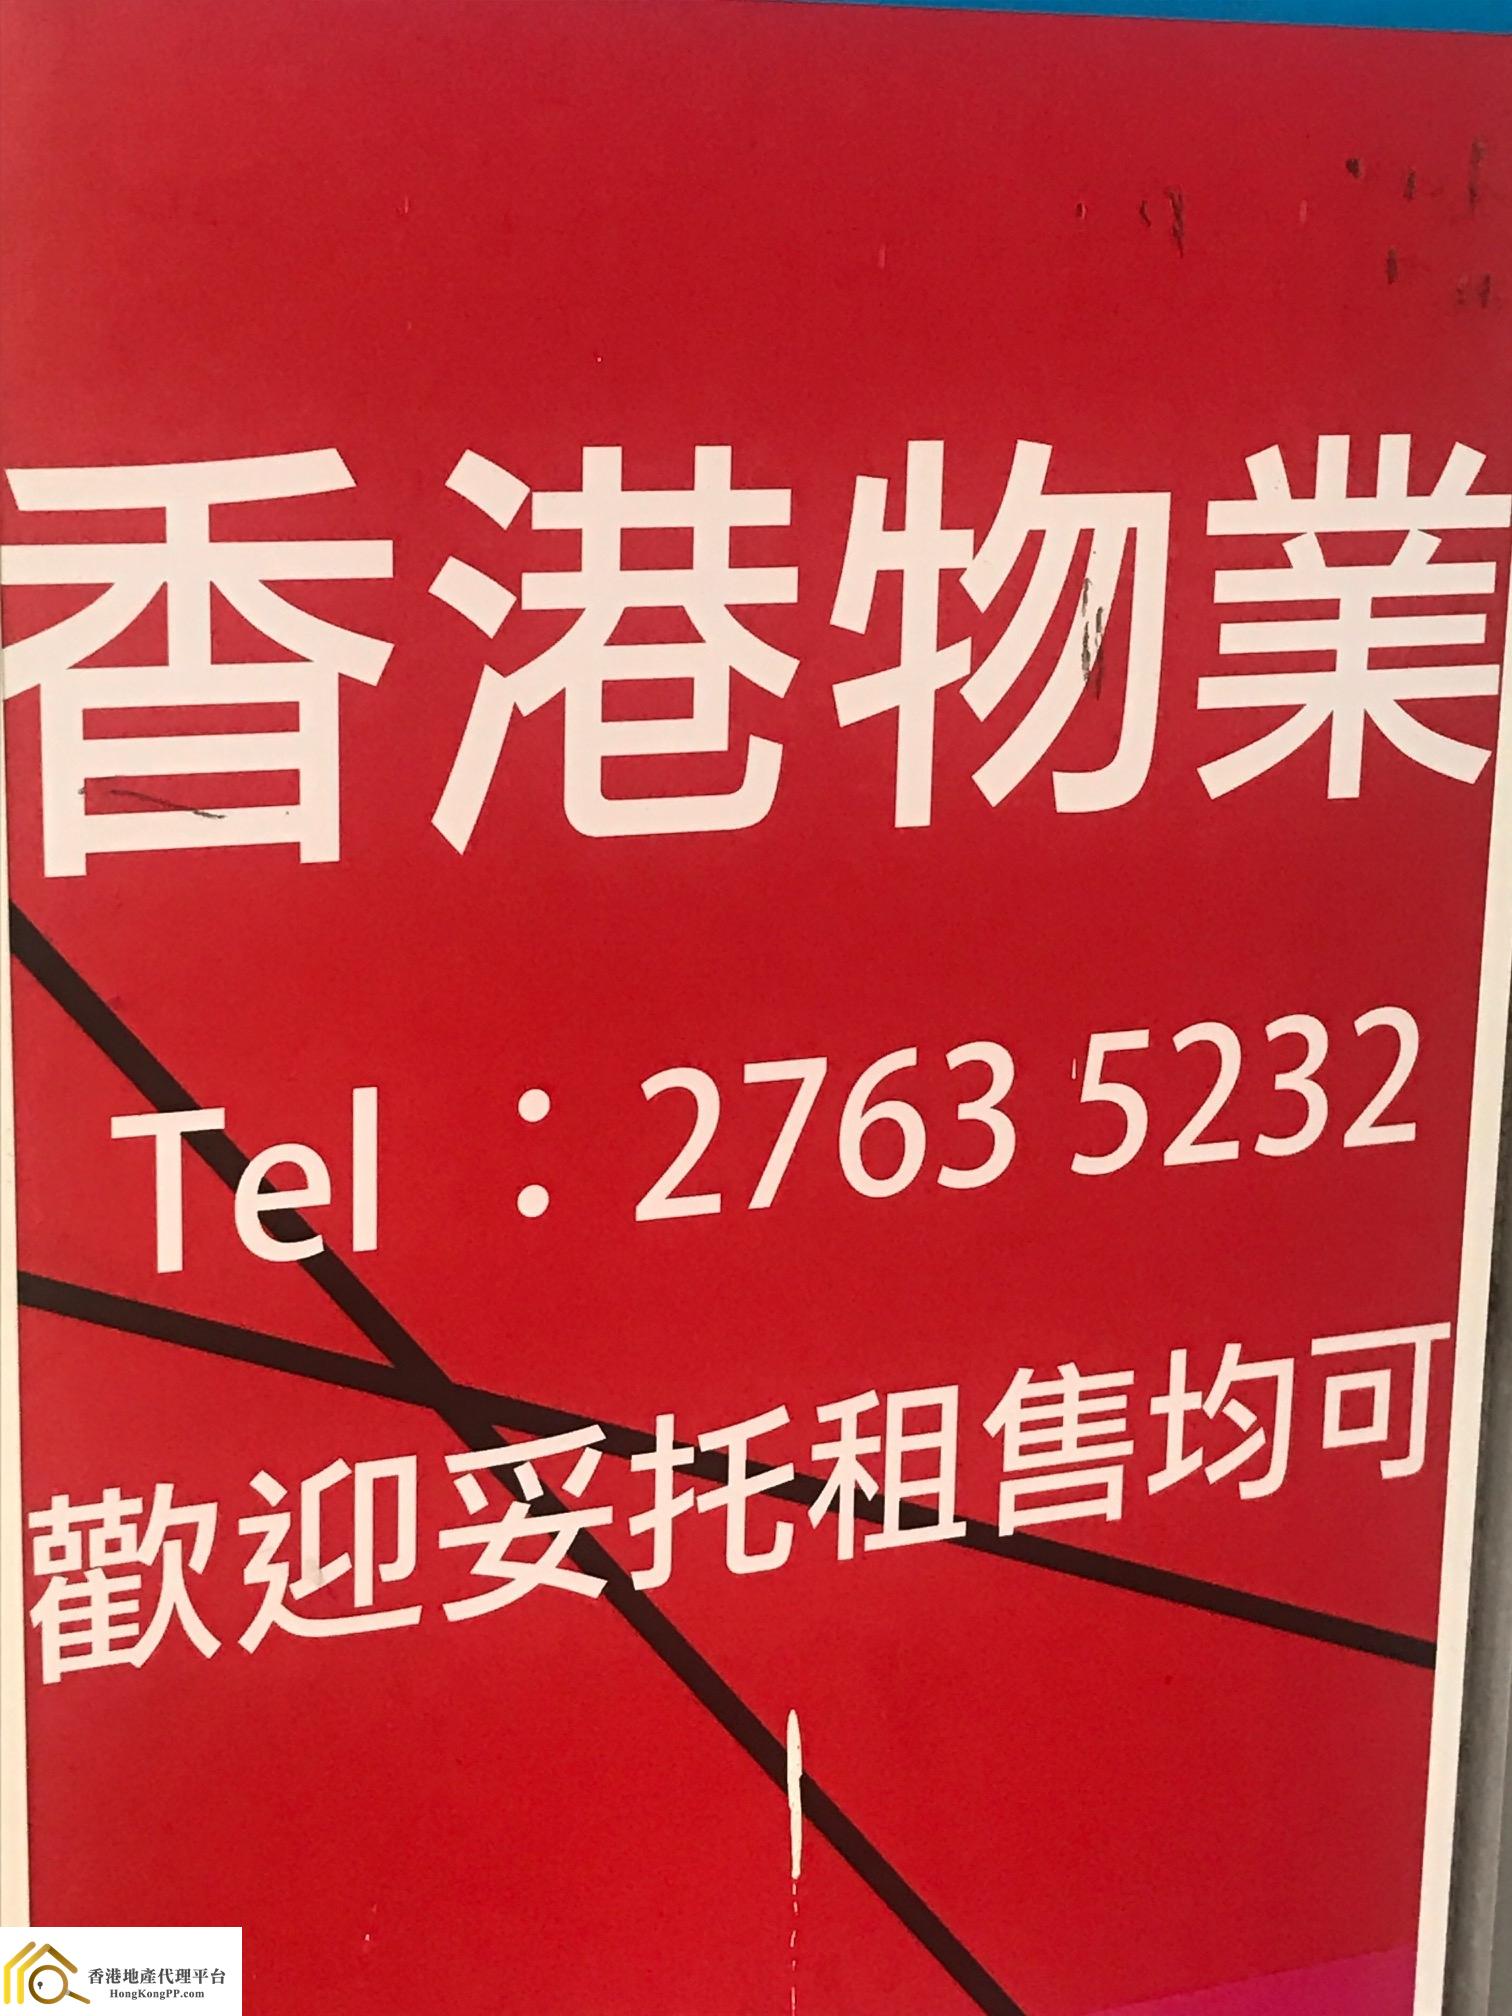 地產代理公司: 香港物業代理